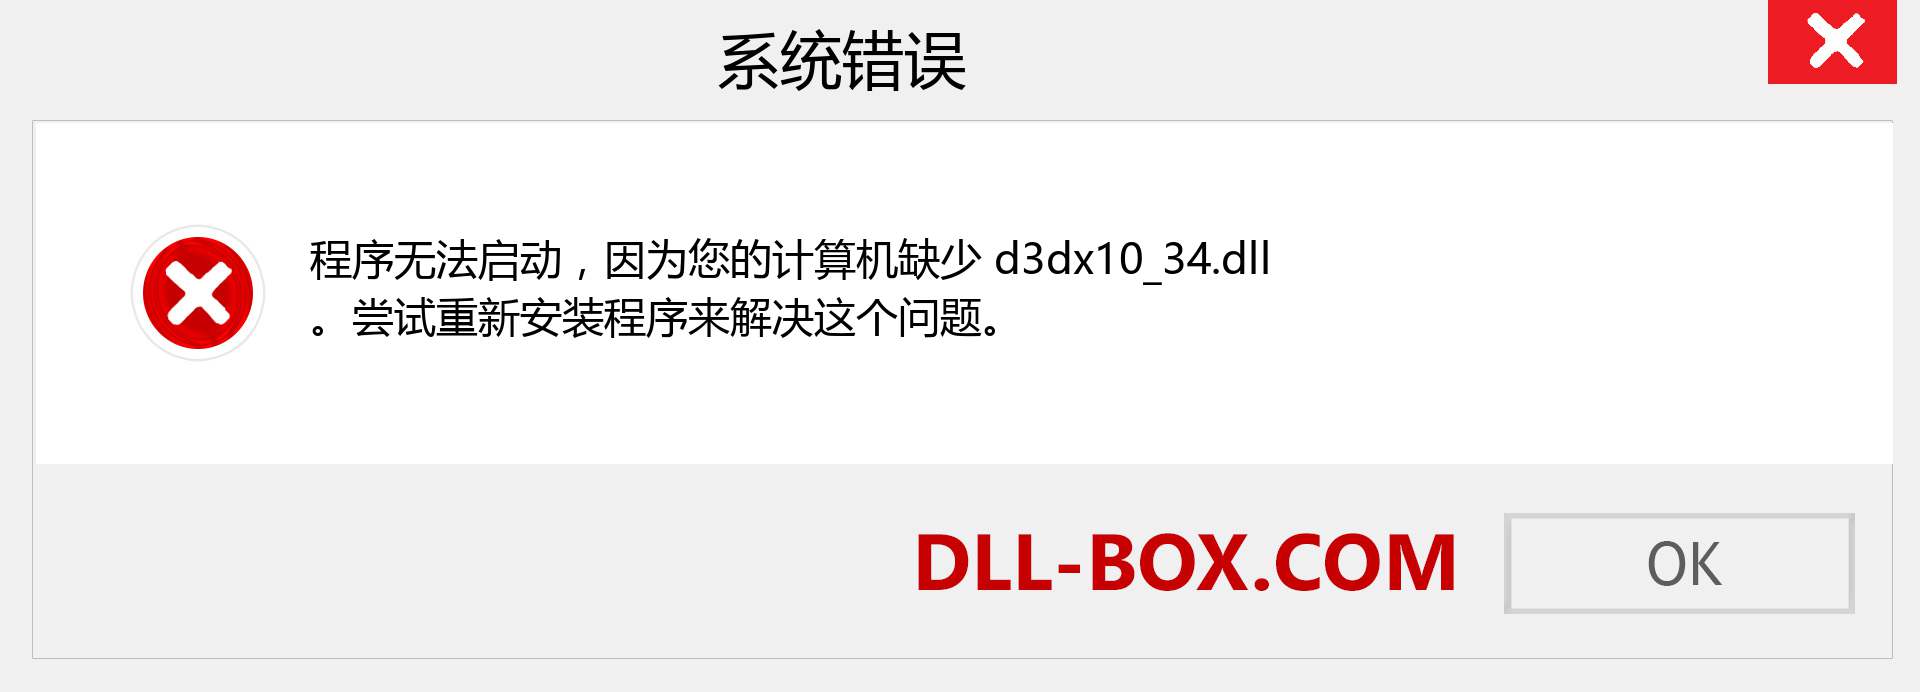 d3dx10_34.dll 文件丢失？。 适用于 Windows 7、8、10 的下载 - 修复 Windows、照片、图像上的 d3dx10_34 dll 丢失错误